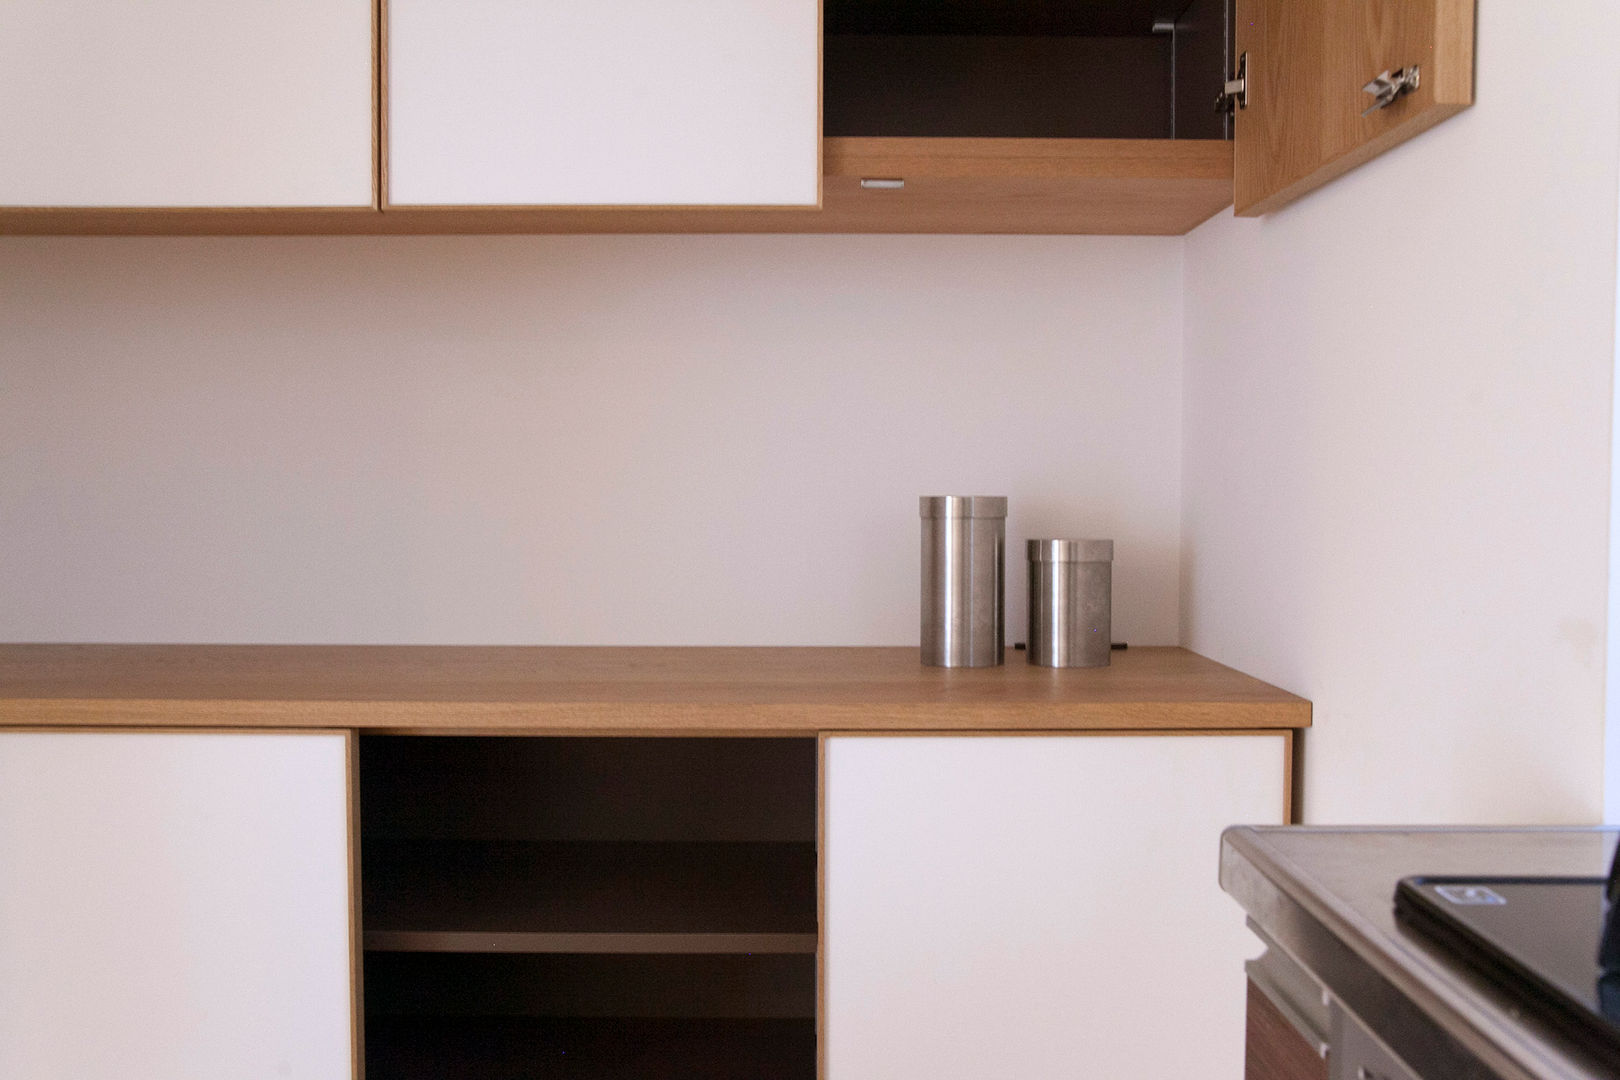 個人宅カップボード, 村松英和デザイン 村松英和デザイン Eclectic style kitchen Cabinets & shelves